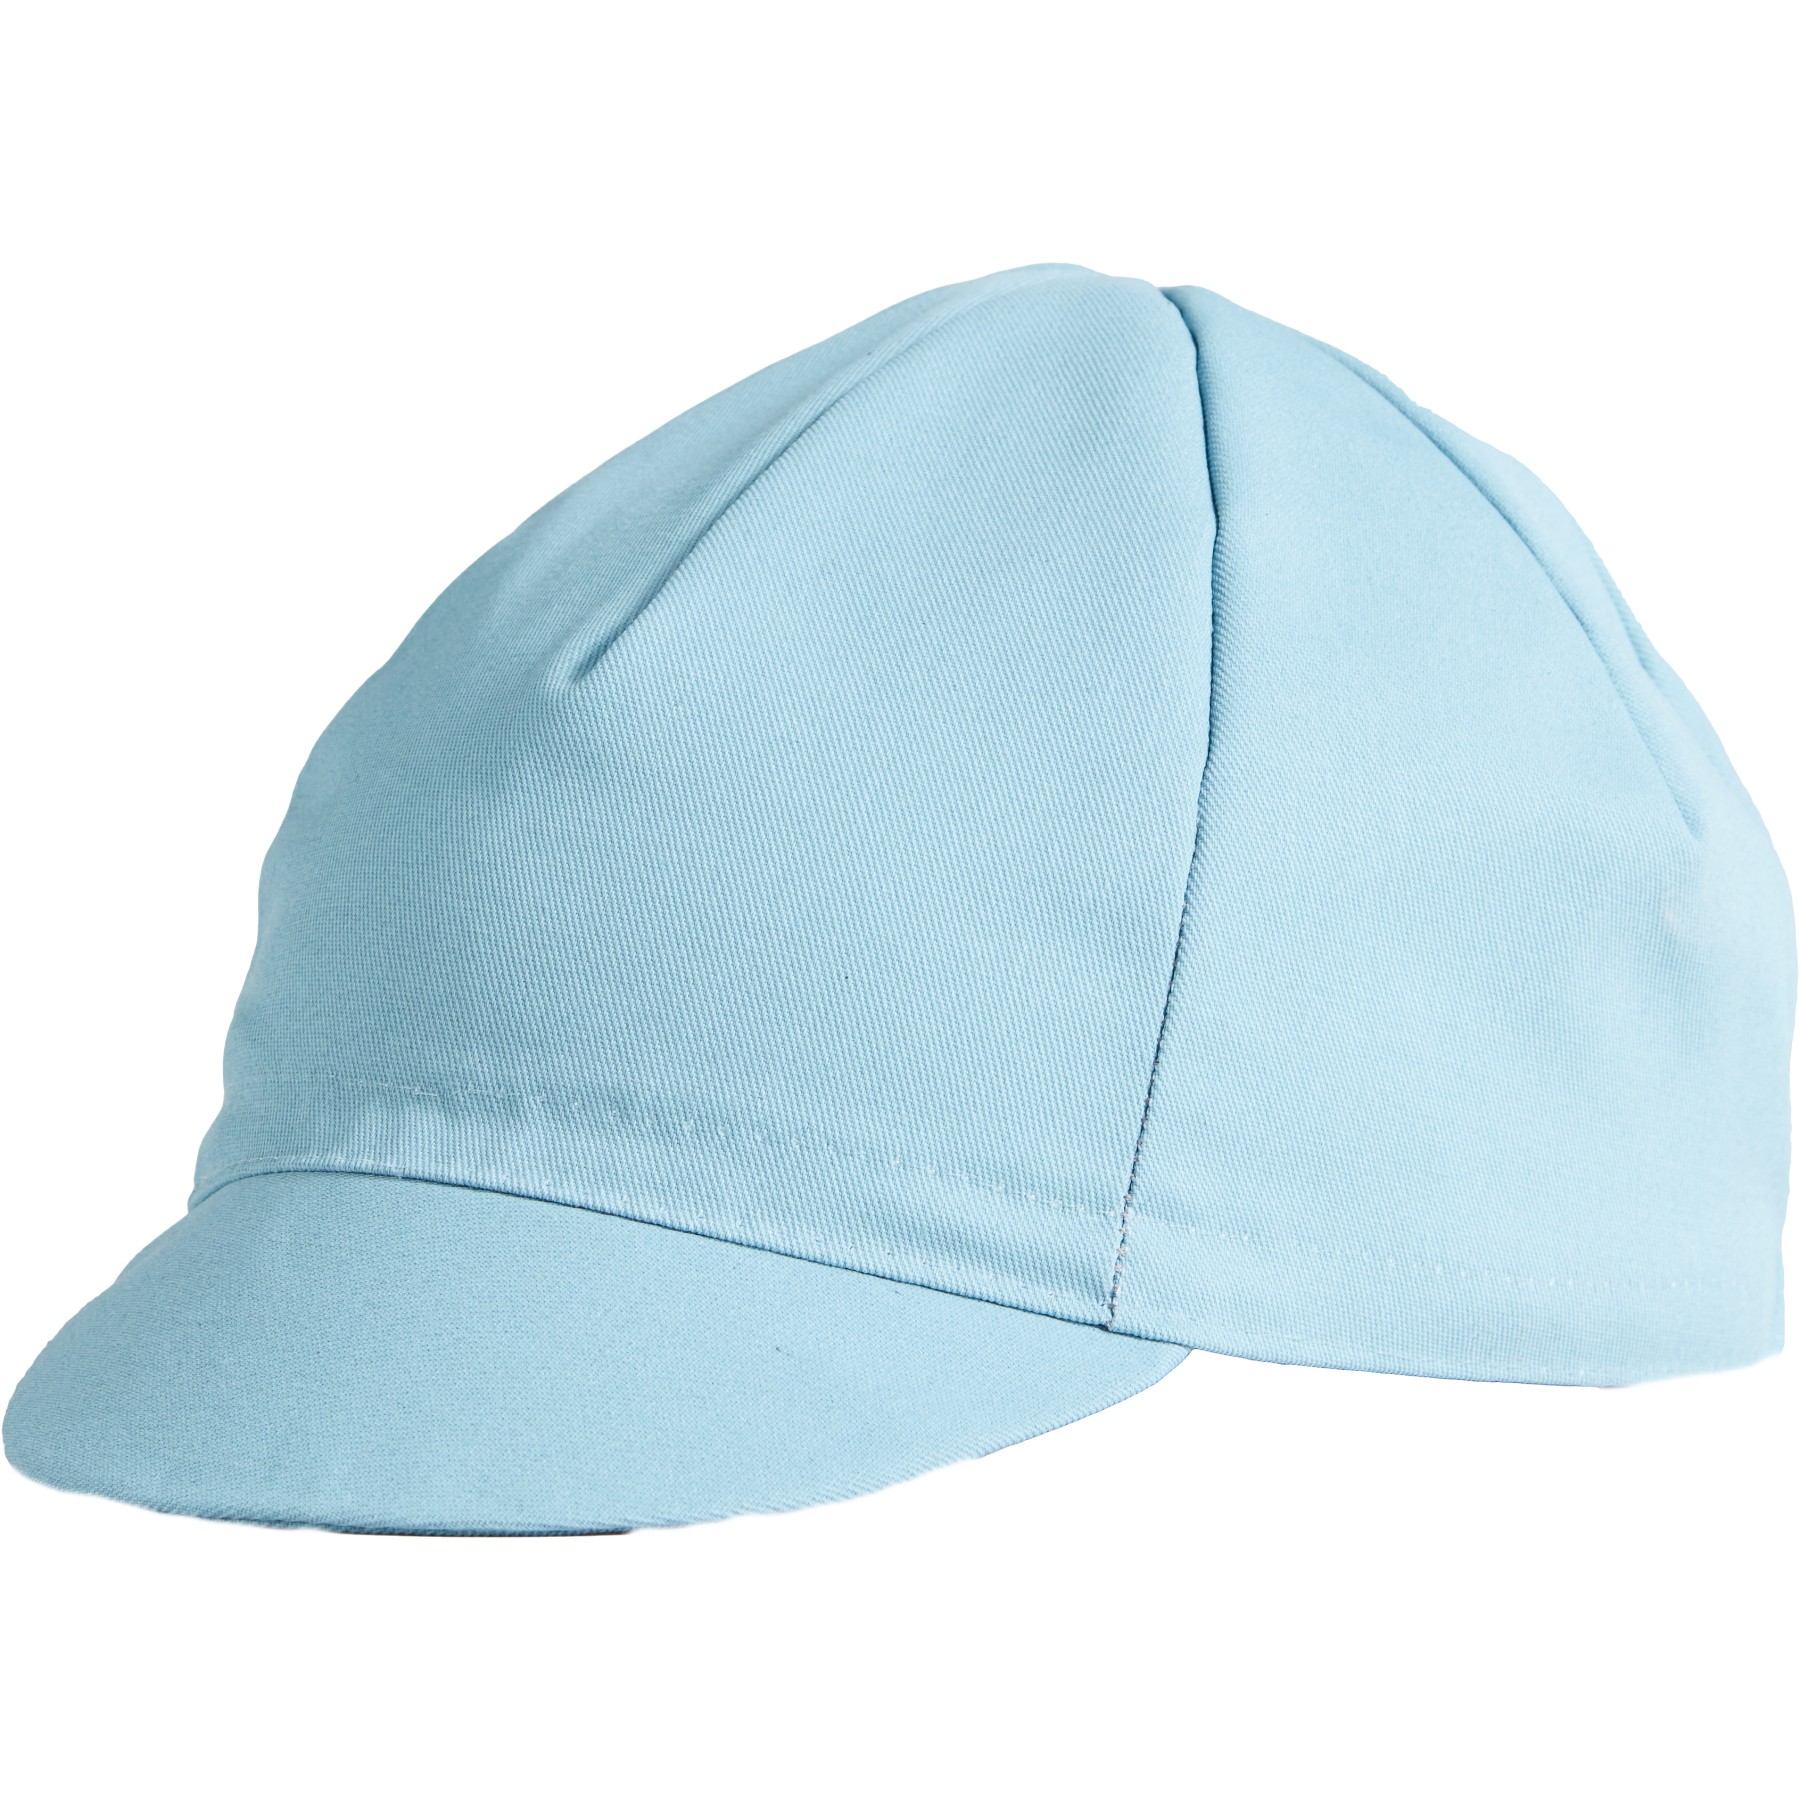 Produktbild von Specialized Cotton Cycling Cap - arctic blue